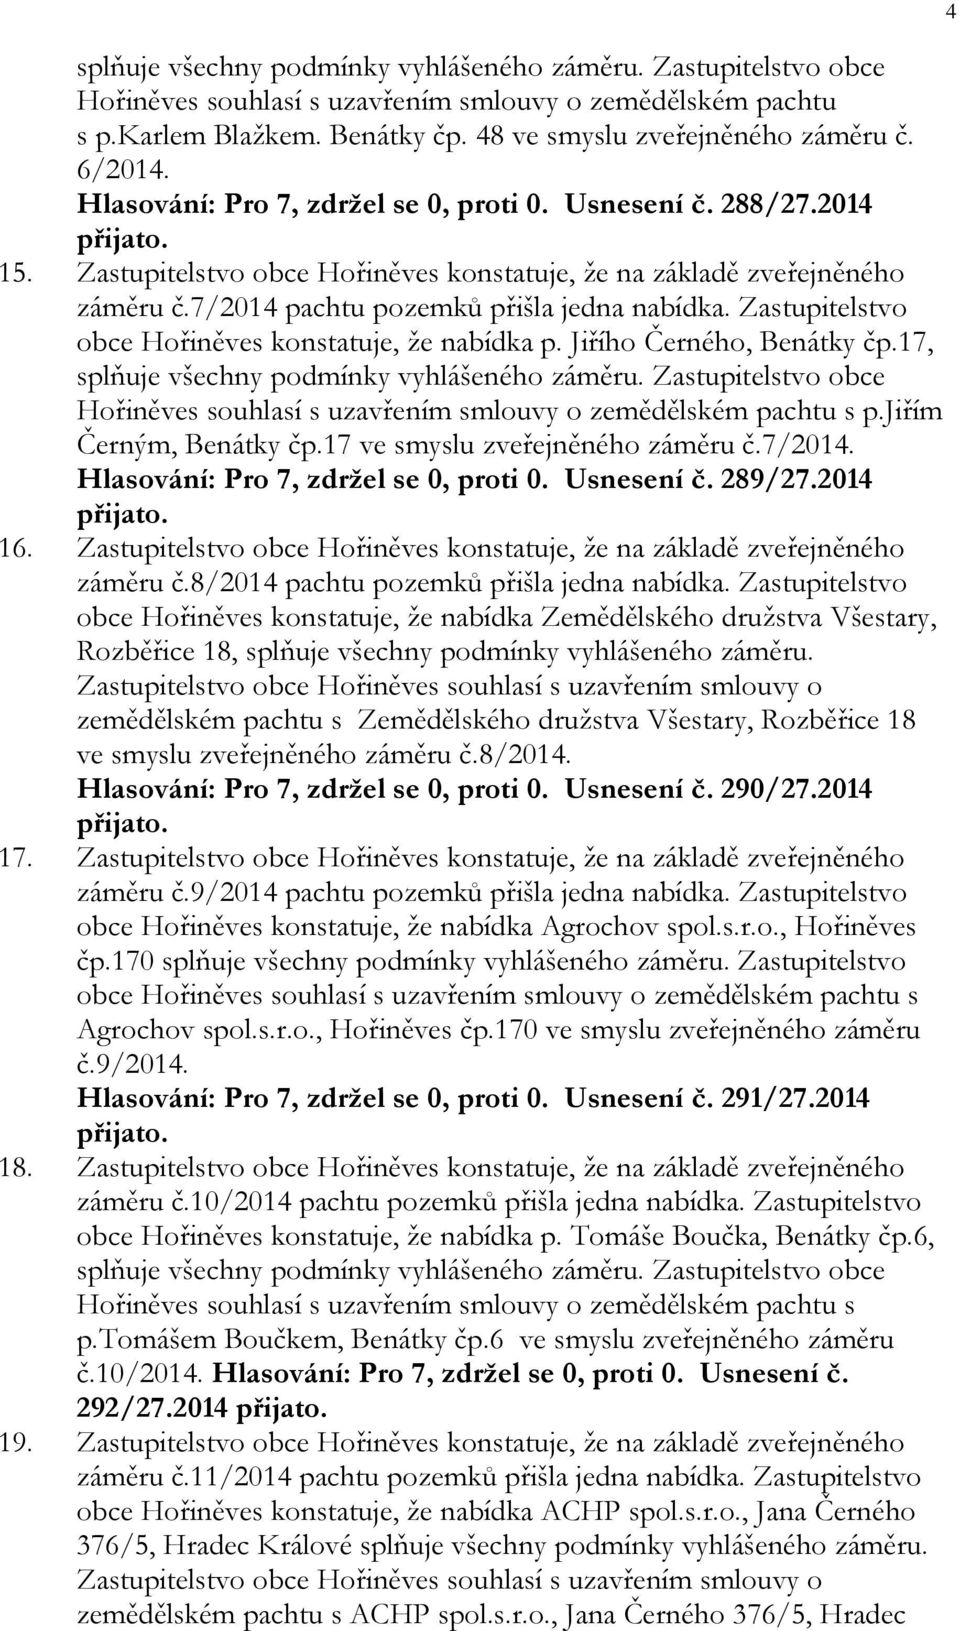 Zastupitelstvo obce Hořiněves konstatuje, že nabídka p. Jiřího Černého, Benátky čp.17, splňuje všechny podmínky vyhlášeného záměru.